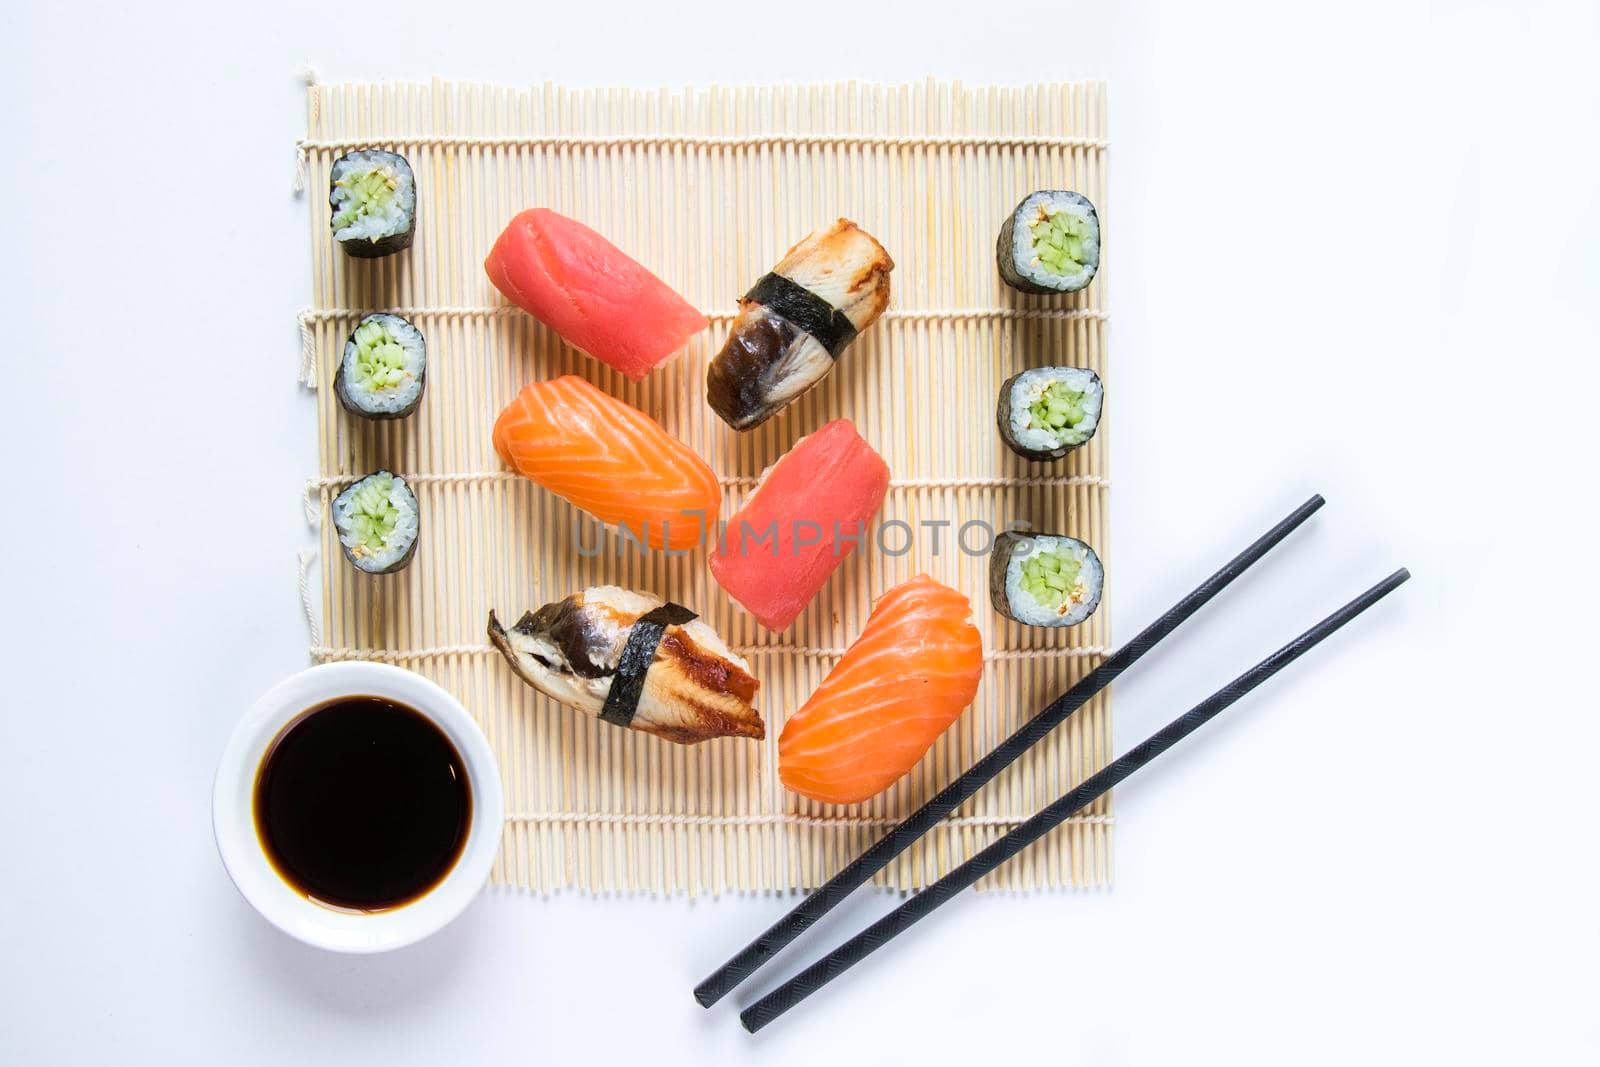 Japanishe food Nigiri sushi set, salmon, tuna and shrimp sushi by Taidundua